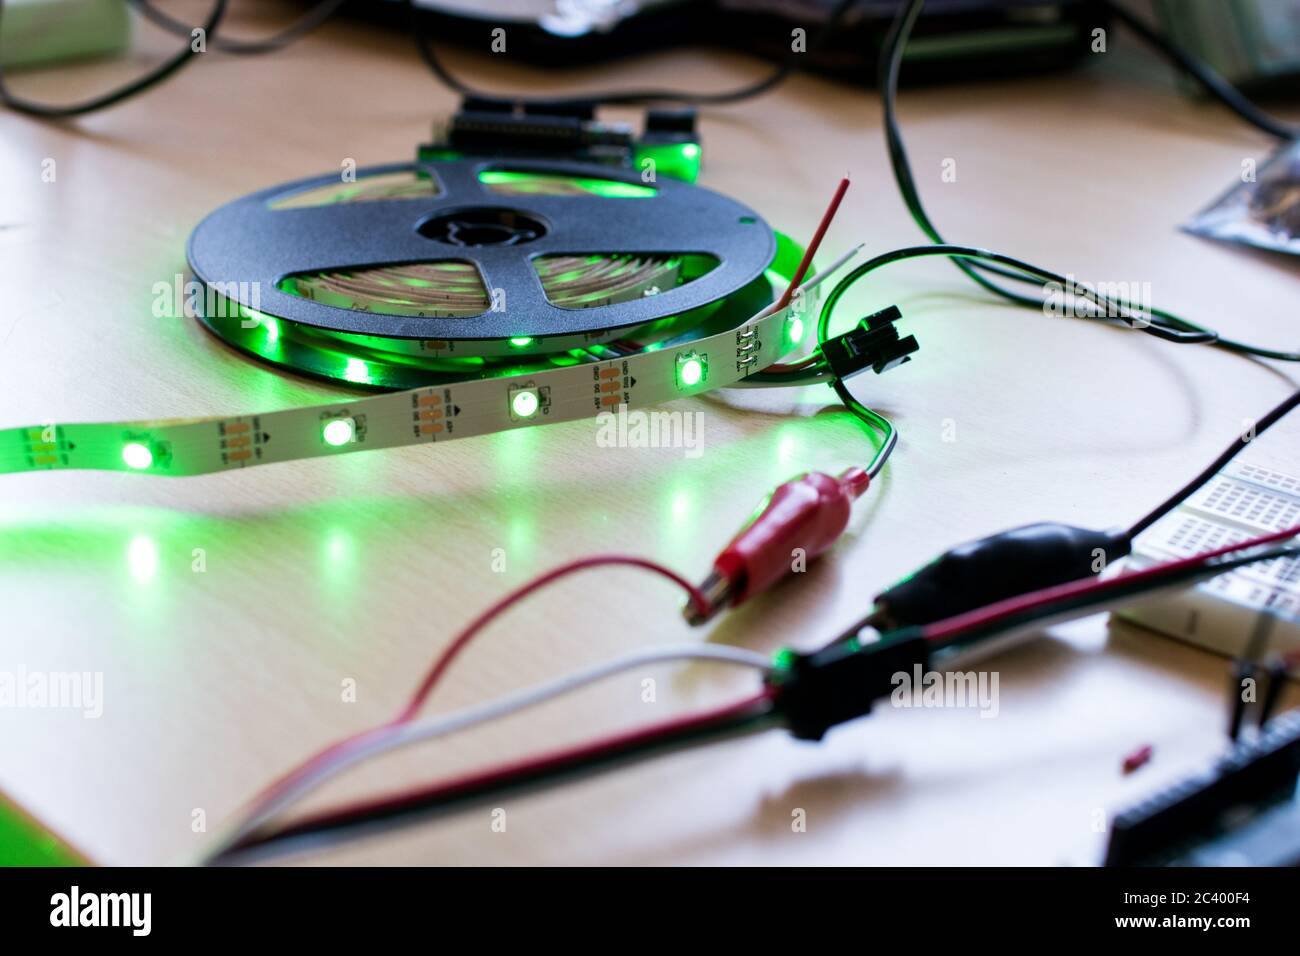 RGB-LED-Streifen adressierbar gesteuert durch einen Mikrocontroller Open  Source, um grünen Farbfluss haben. Maker-Projekt für DIY-Umwelt  Beleuchtung. Leuchten für Stockfotografie - Alamy